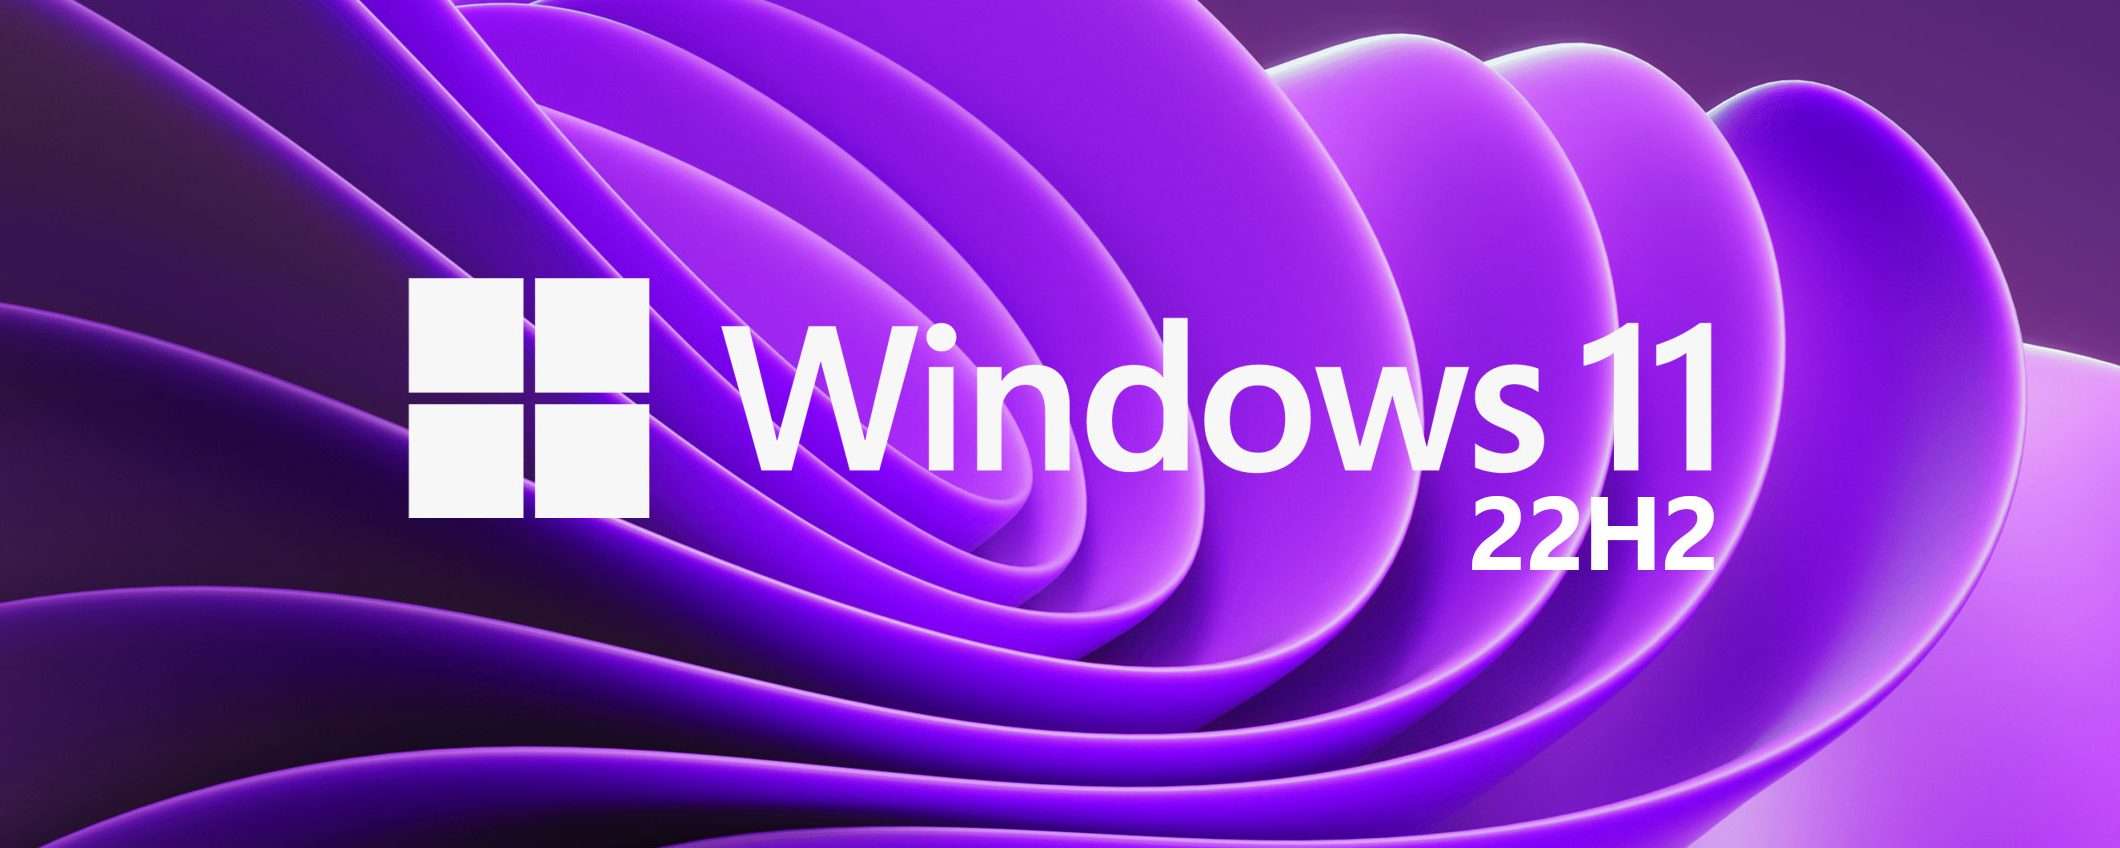 Windows 11: Microsoft risolve un bug dopo 4 mesi